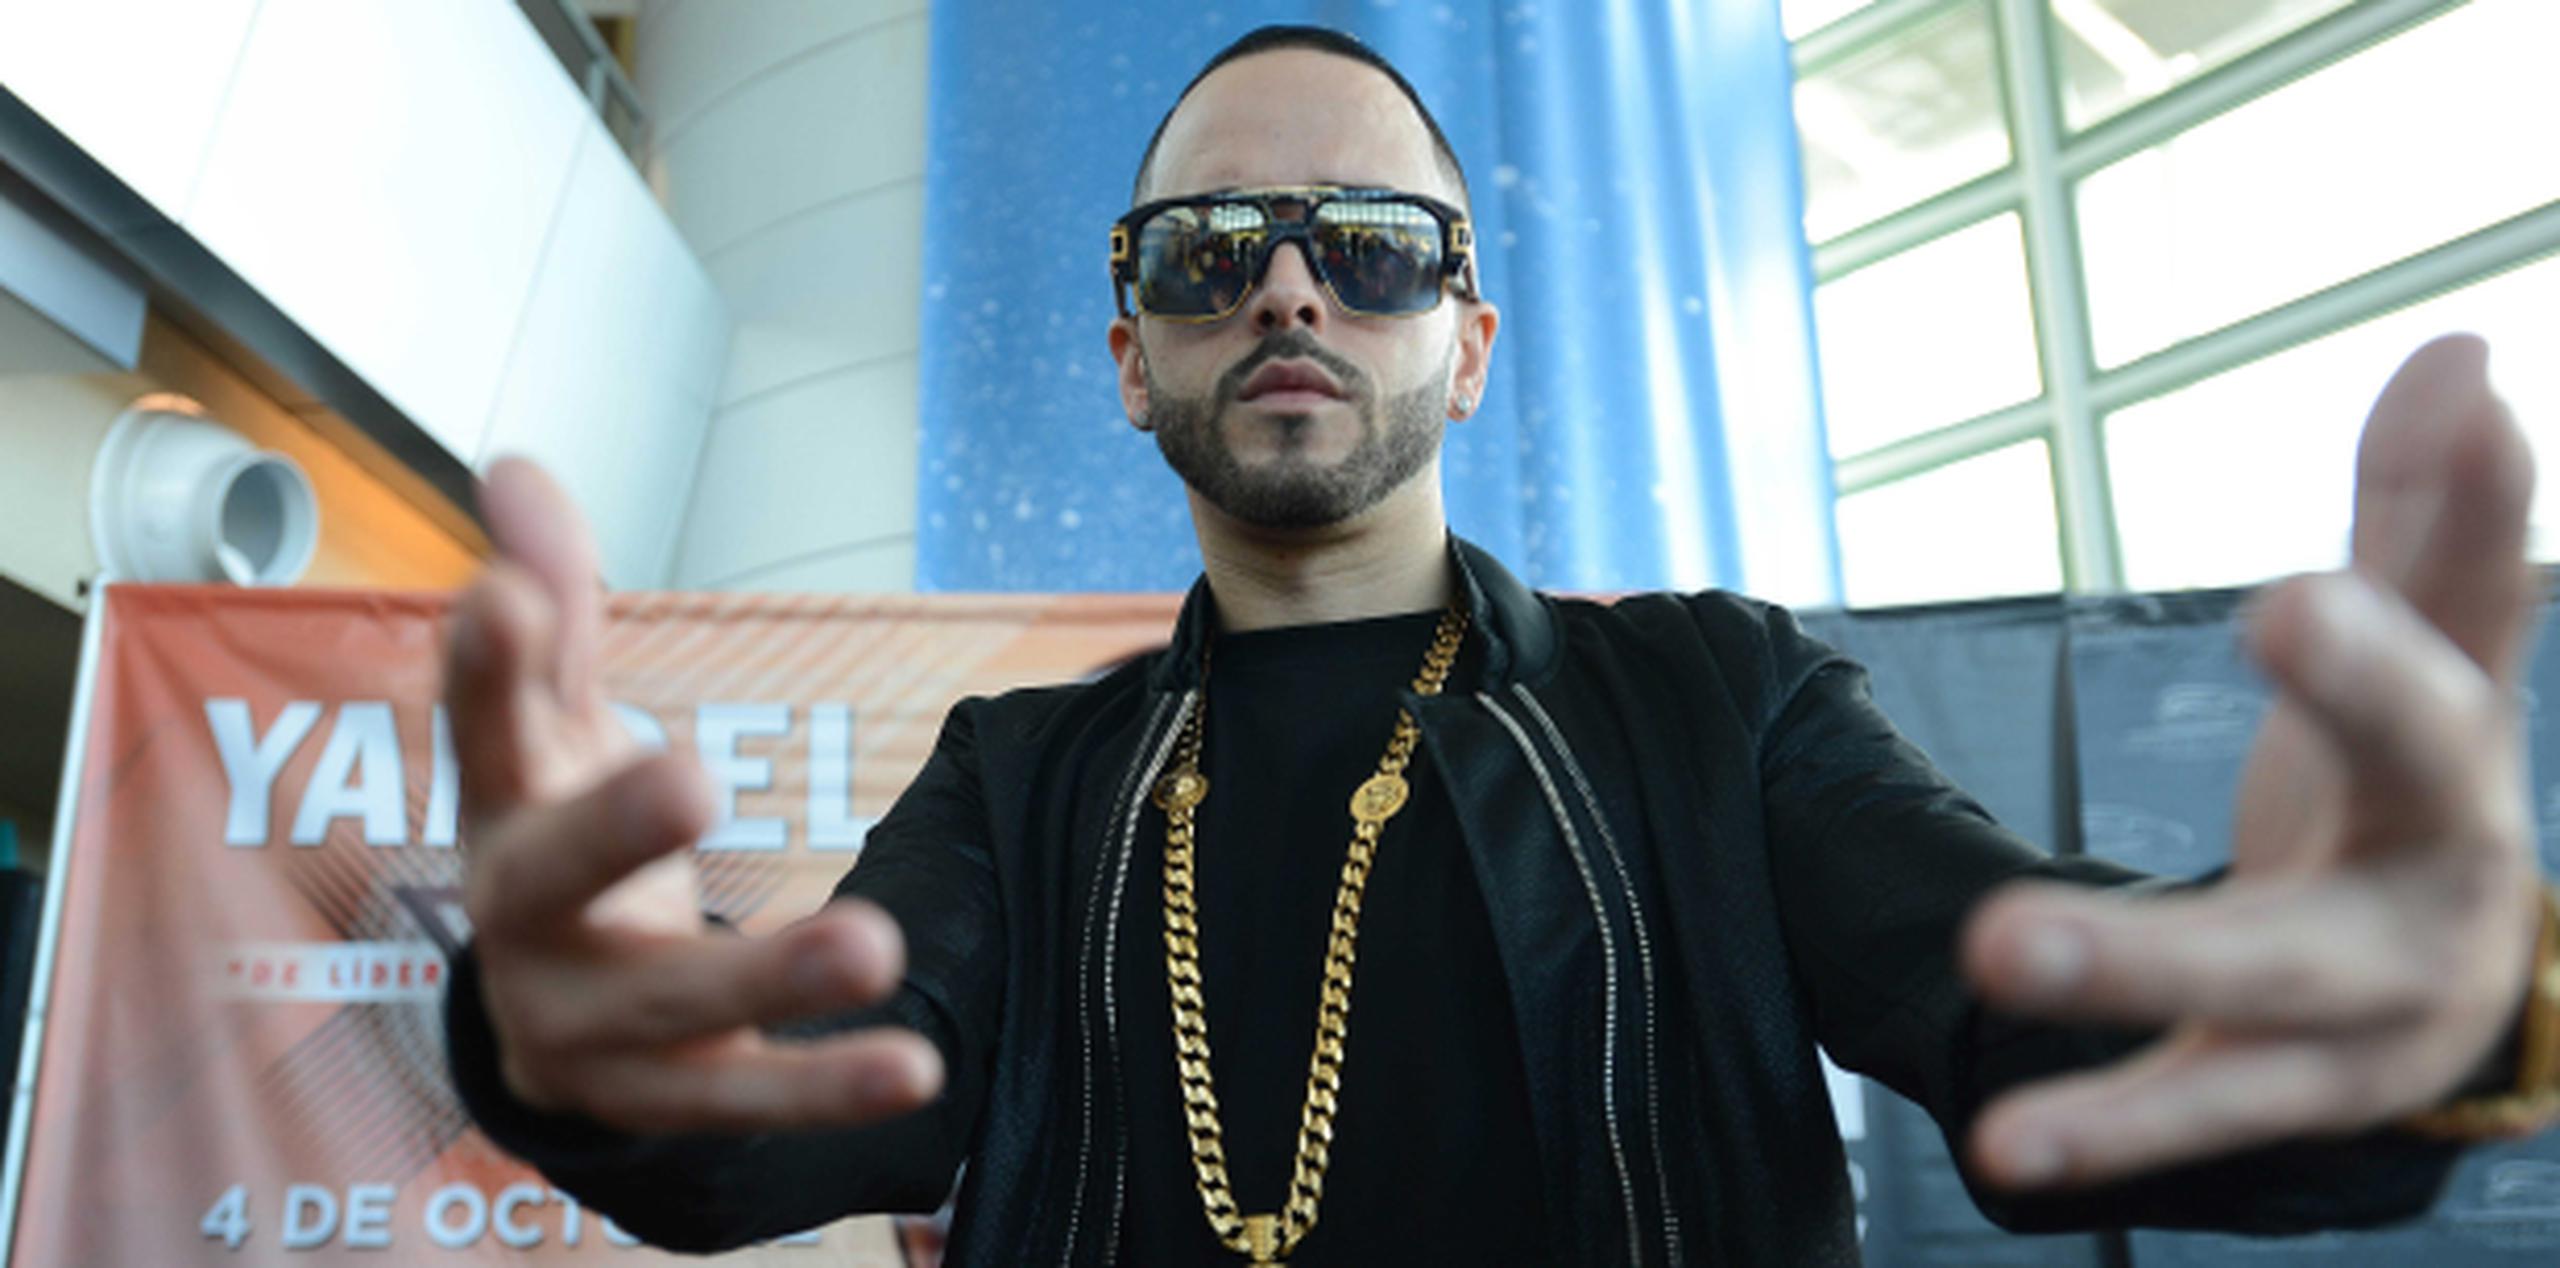 El artista anunció en una conferencia de prensa desde el Coliseo de Puerto Rico que su espectáculo, que será el 4 de octubre,  se grabará por HBO Latino. (ana.abruna@gfrmedia.com)